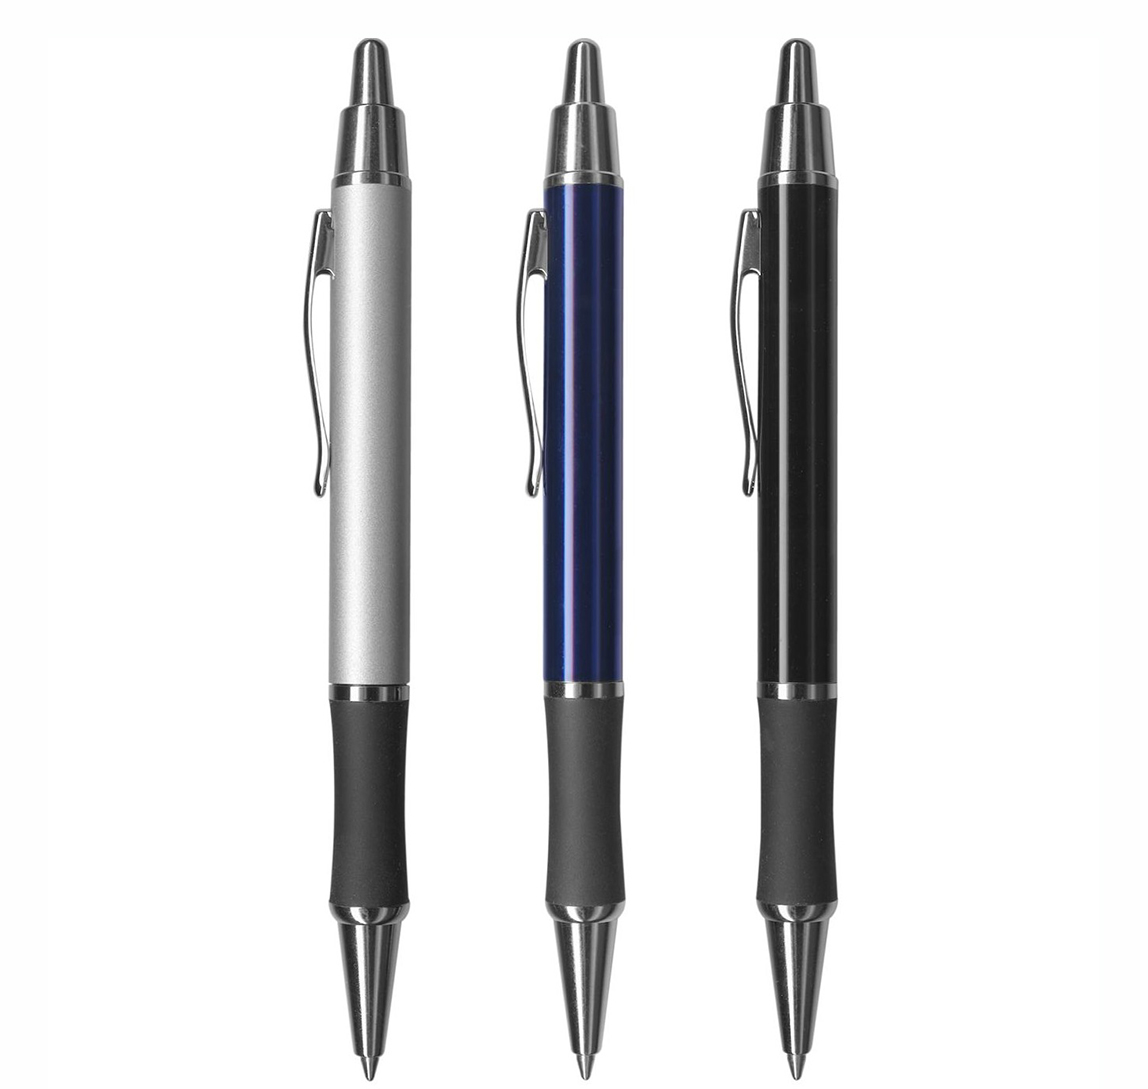 Moritz Pen Features